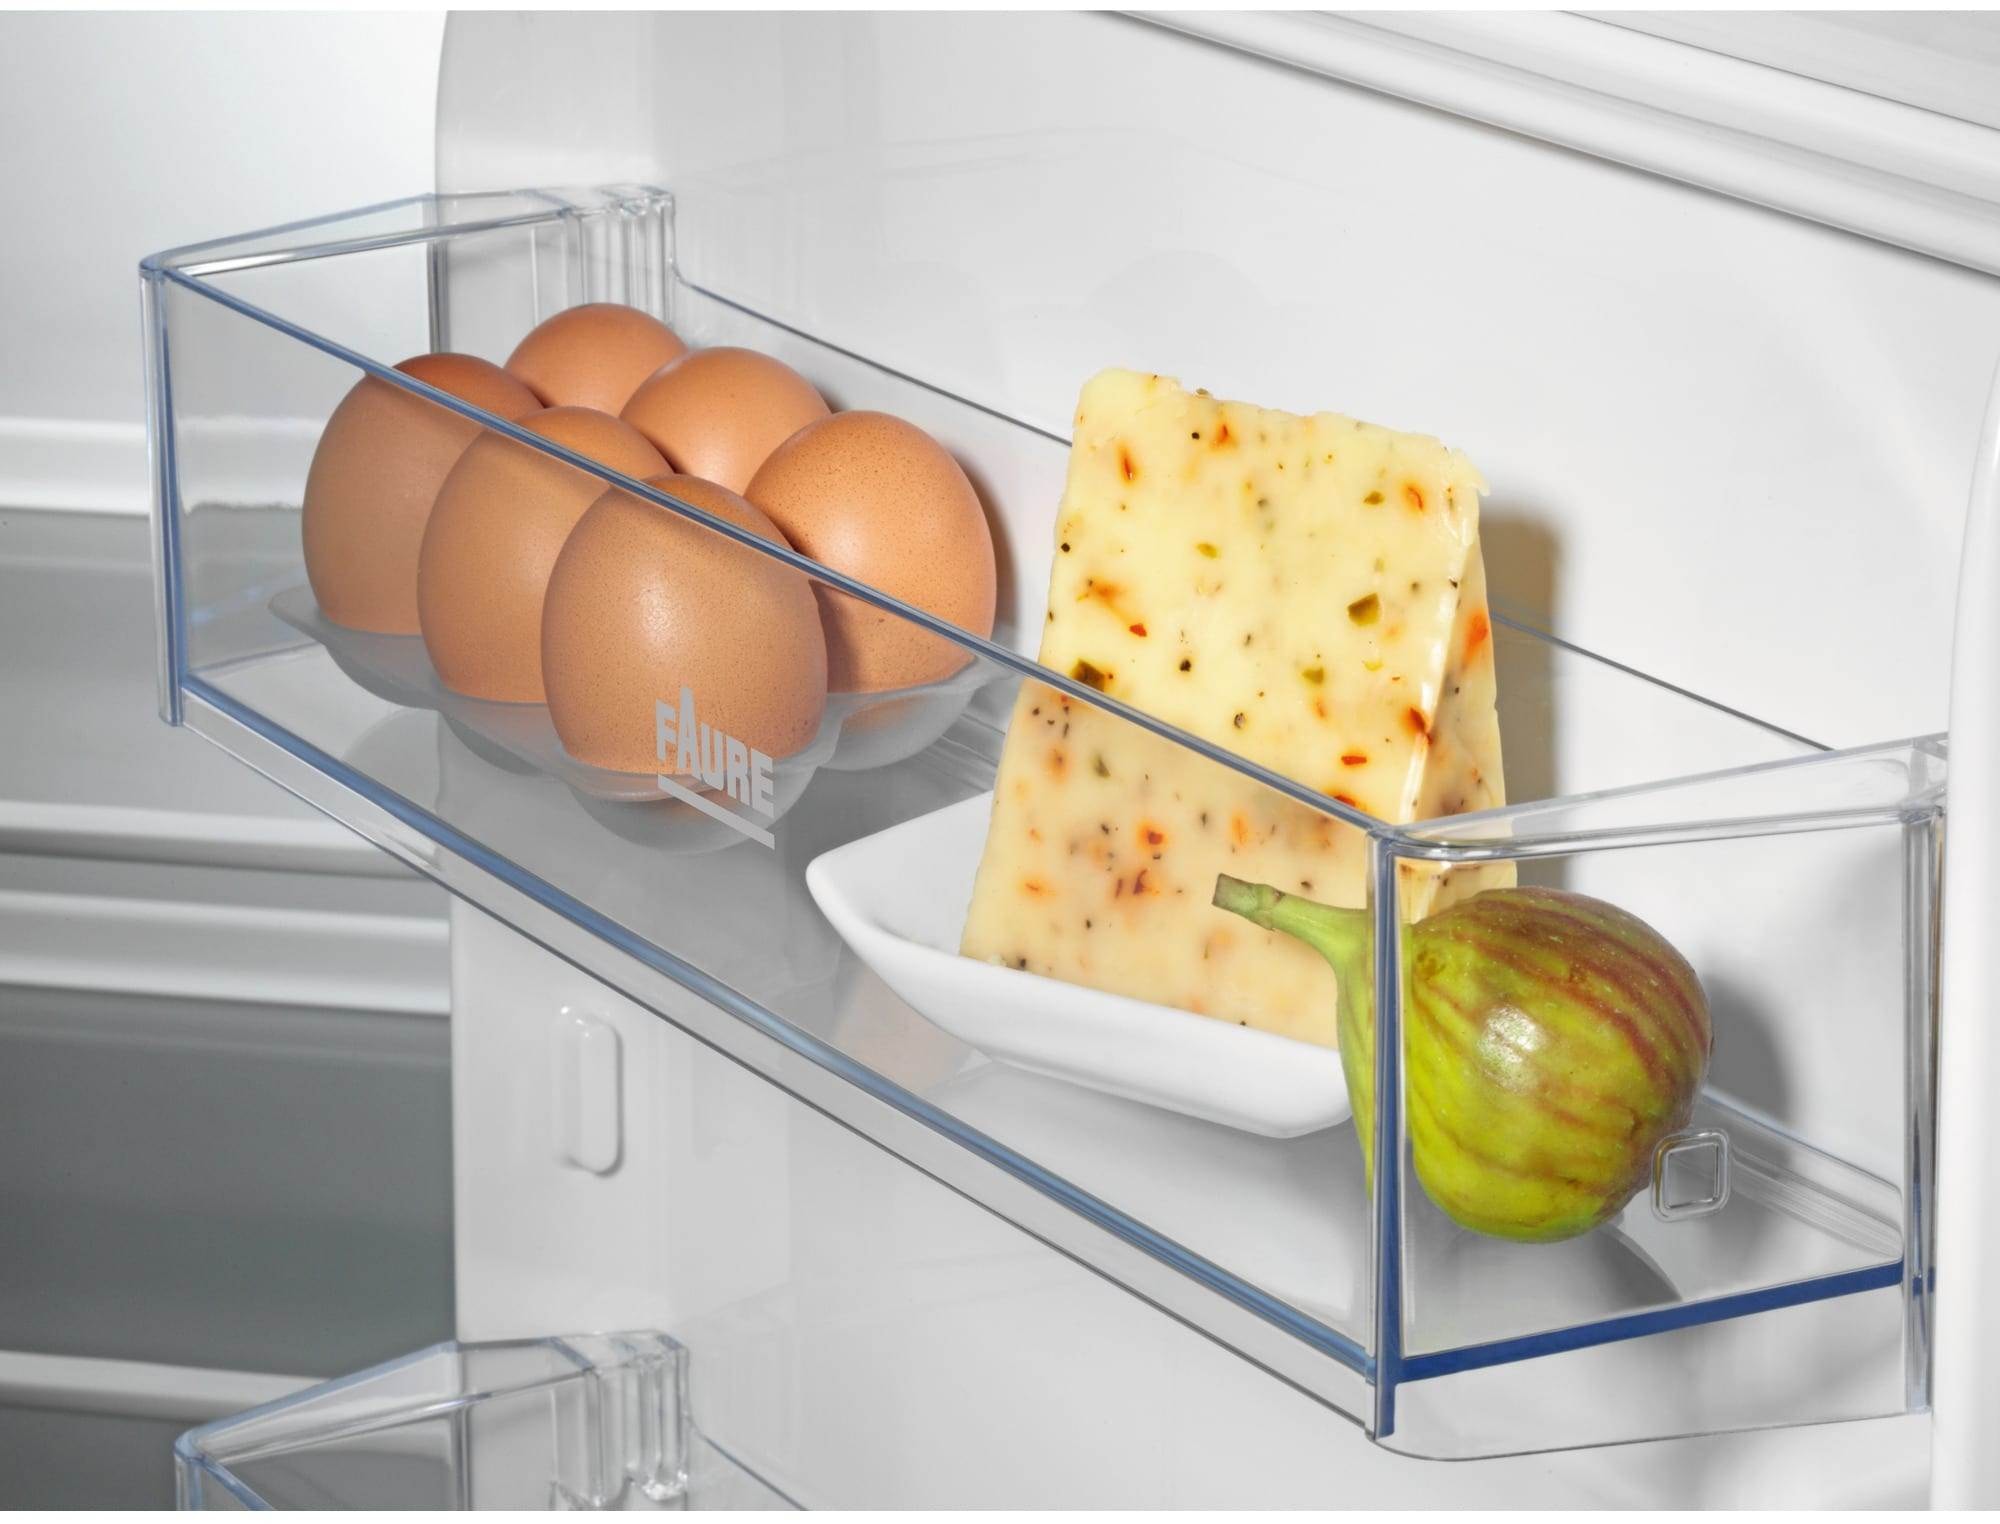 Refrigerateur - Frigo Faure FRAN88FS- Table Top Encastrable - 142L - Froid  Statique- L 58.5 x H 92.5 cm - Fixation Glissiere